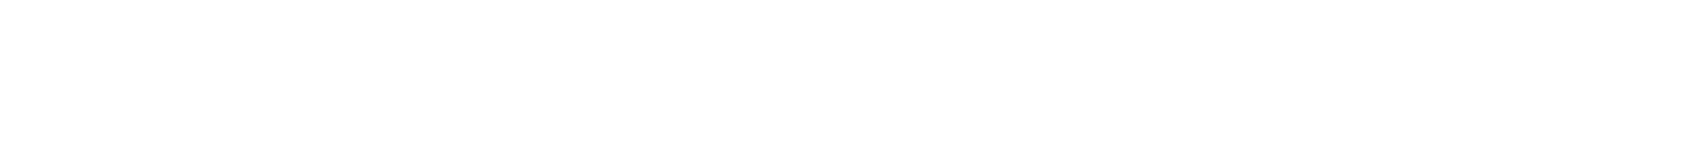 Cristiana pruteanu logo